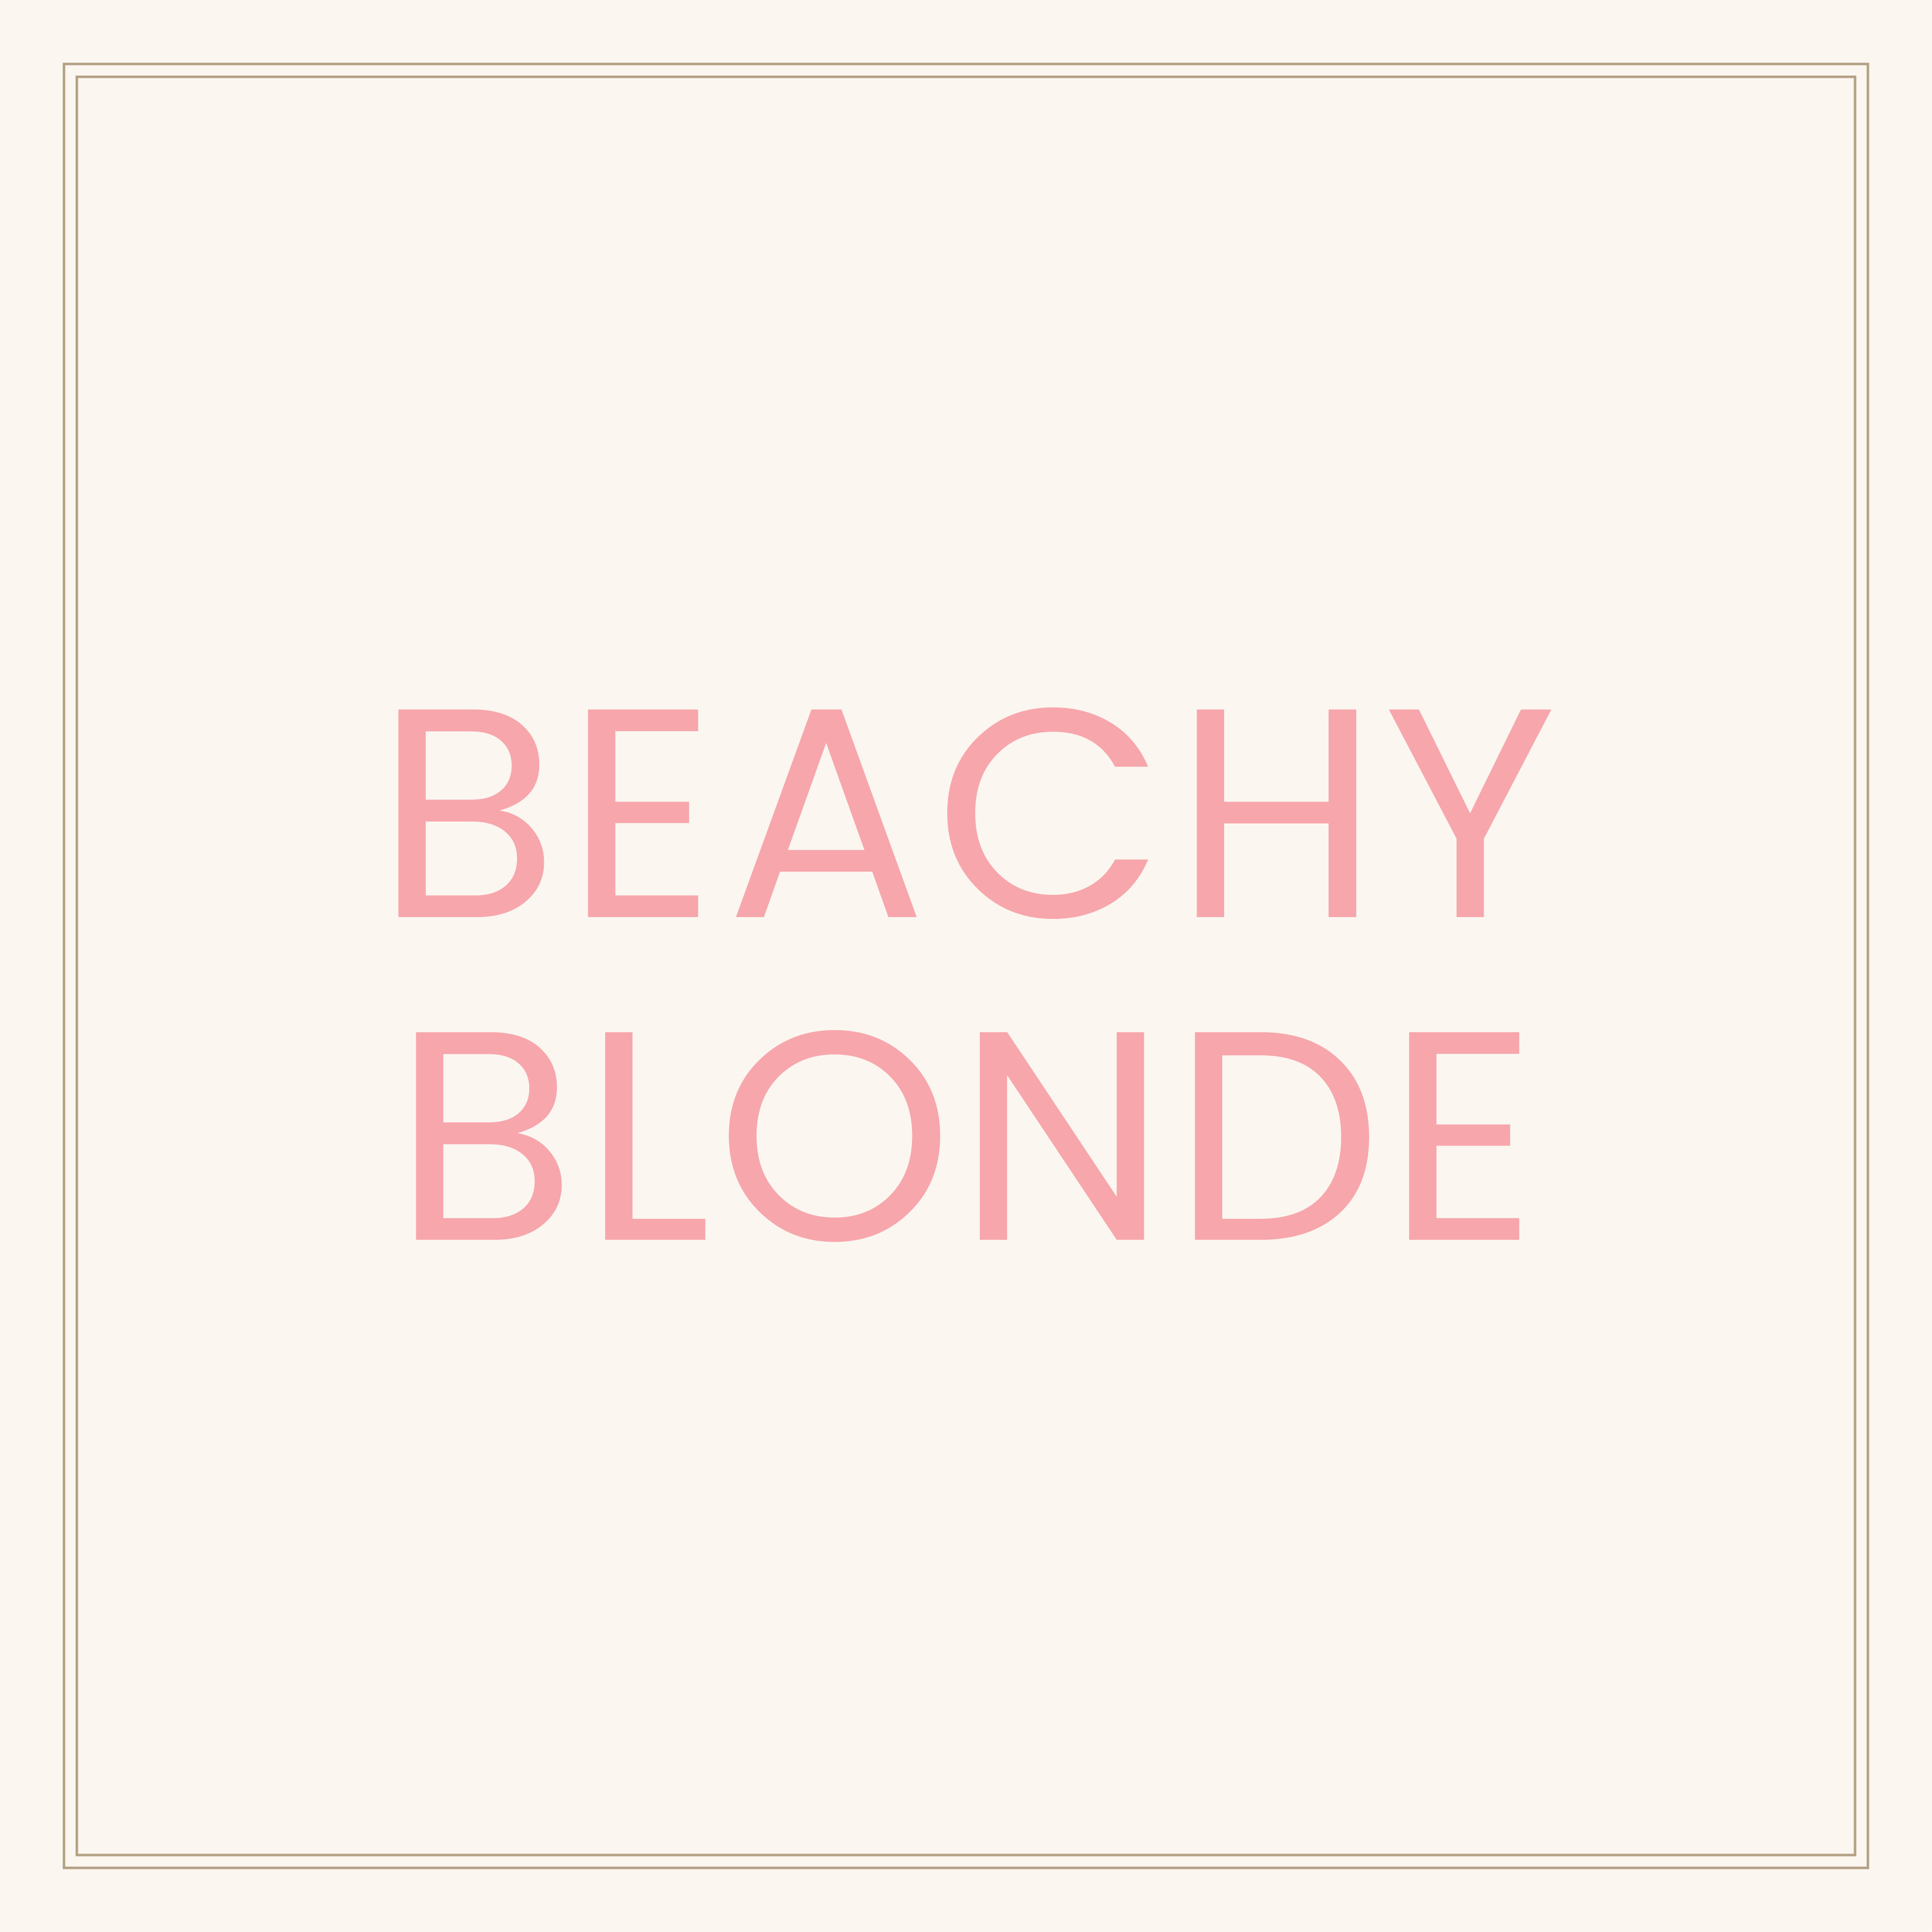 Kor beachy blonde social post cover april 2019